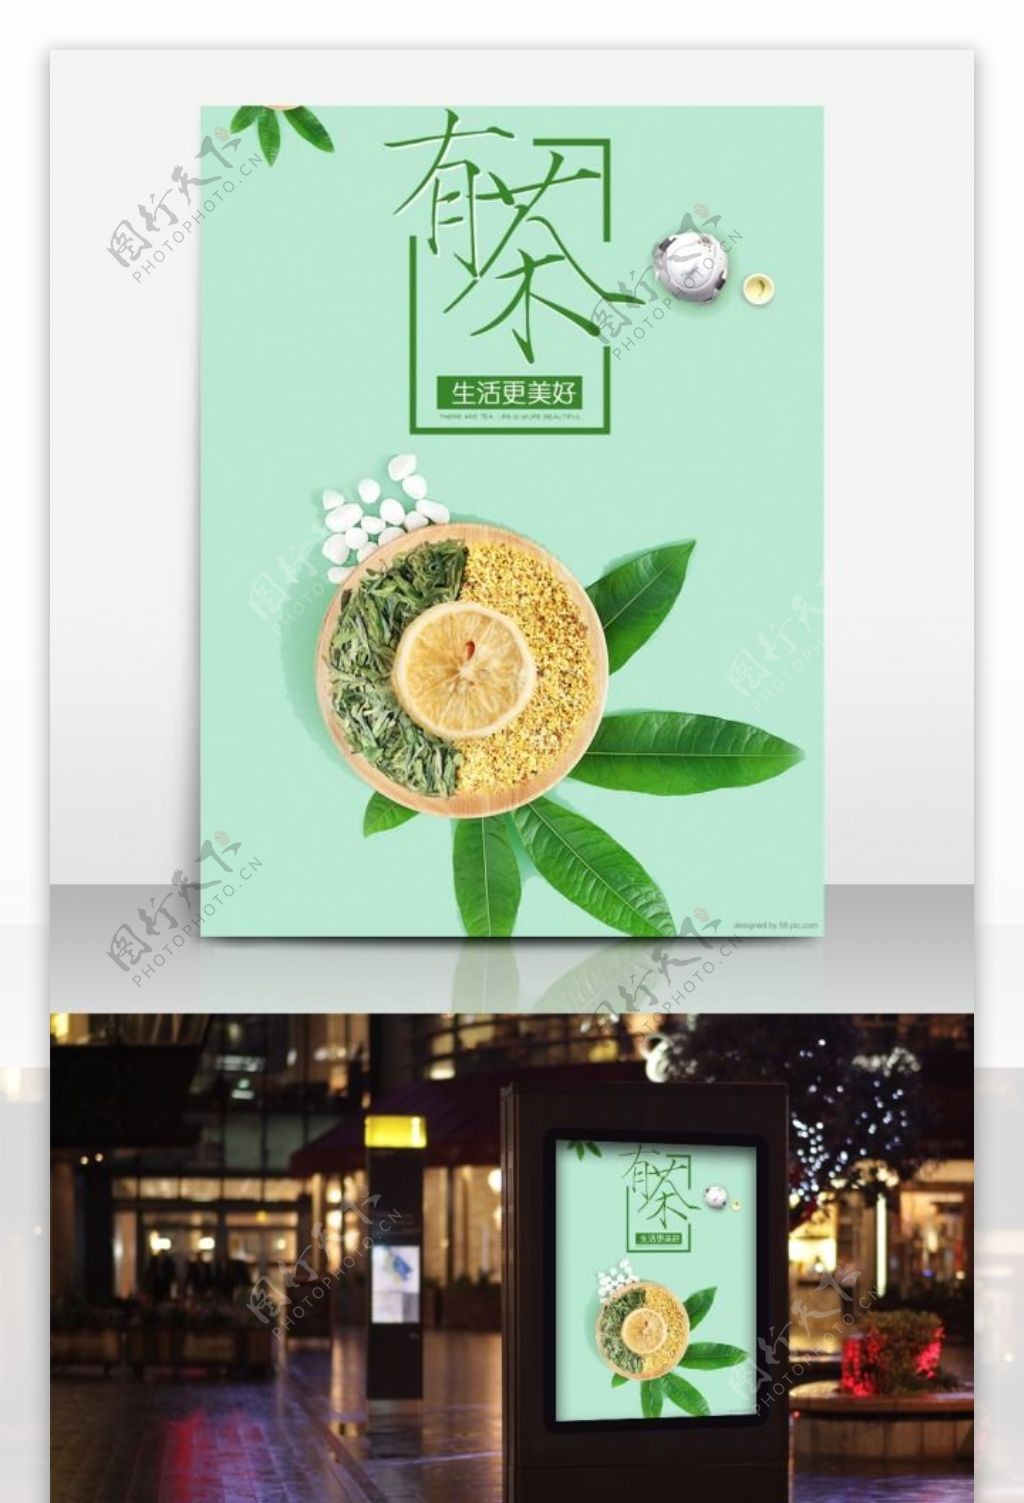 有茶生活更美好茶文化茶叶绿色清新海报